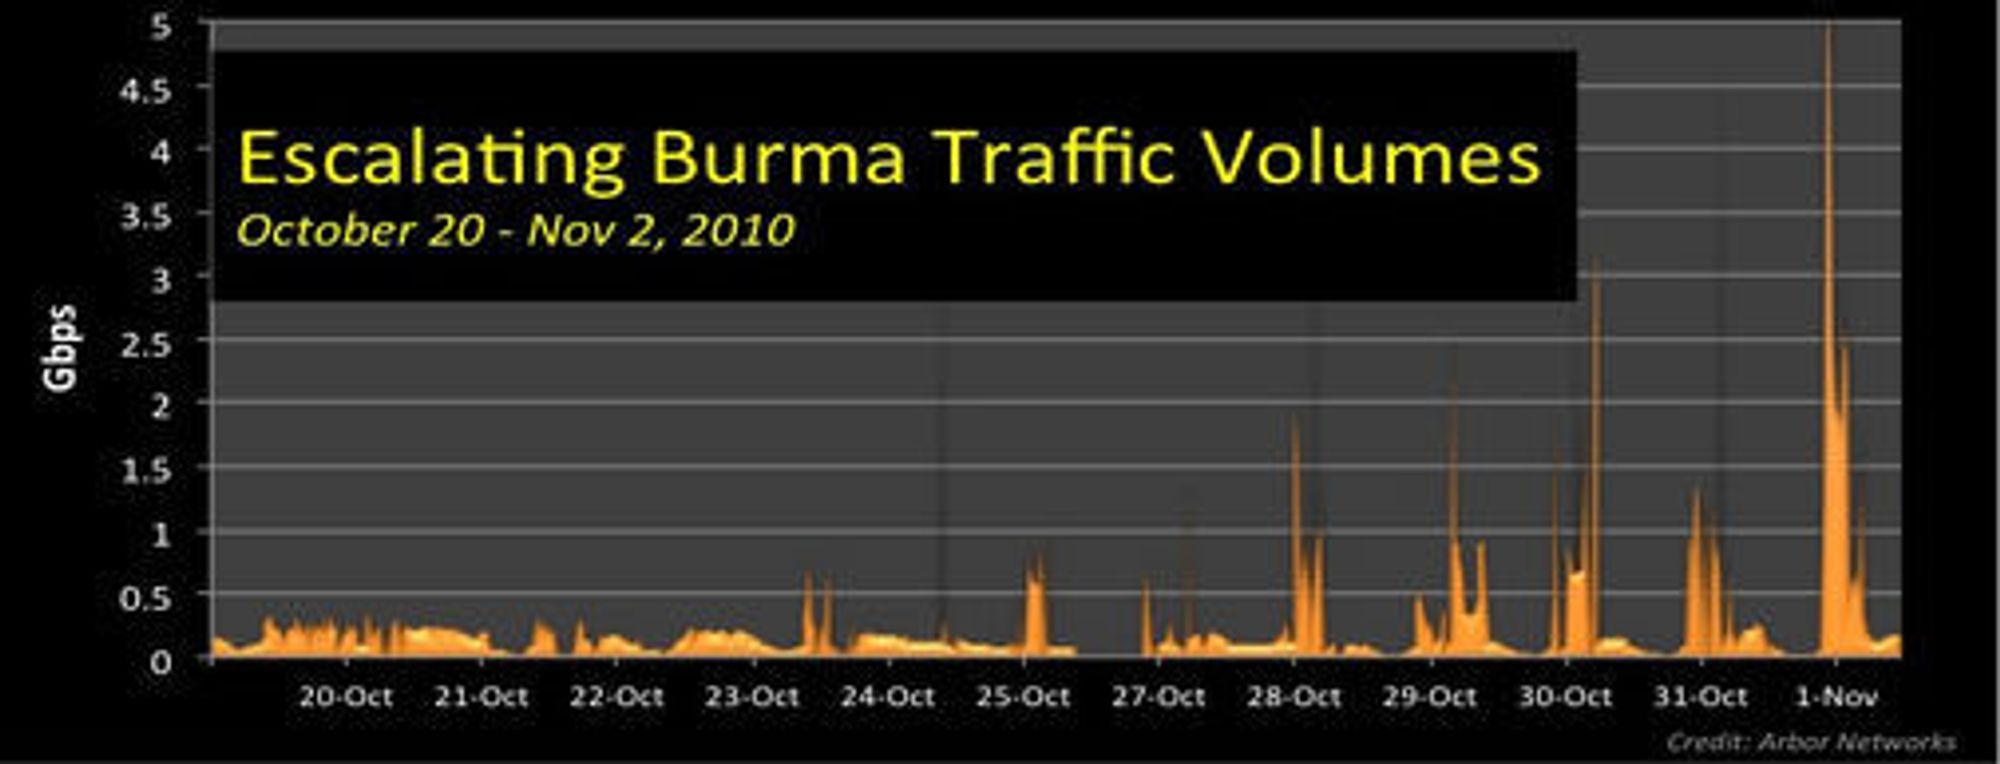 Angrepene mot Burma har tiltatt i styrke over flere dager, og begynte i slutten av oktober.